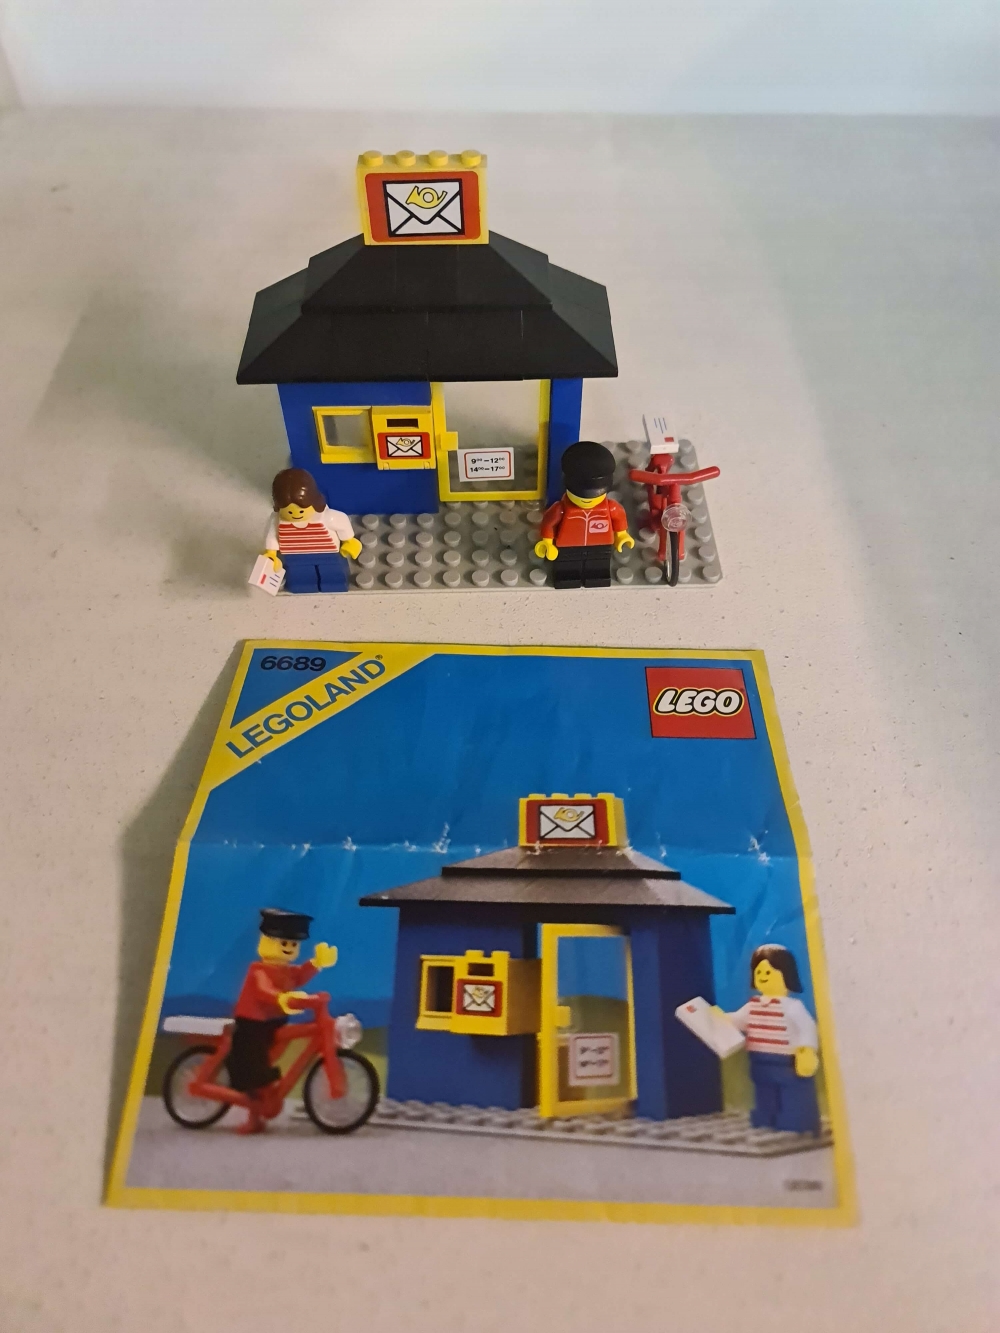 Sett 6689 fra Lego Classic Town serien.
Flott sett. Komplett med manual.